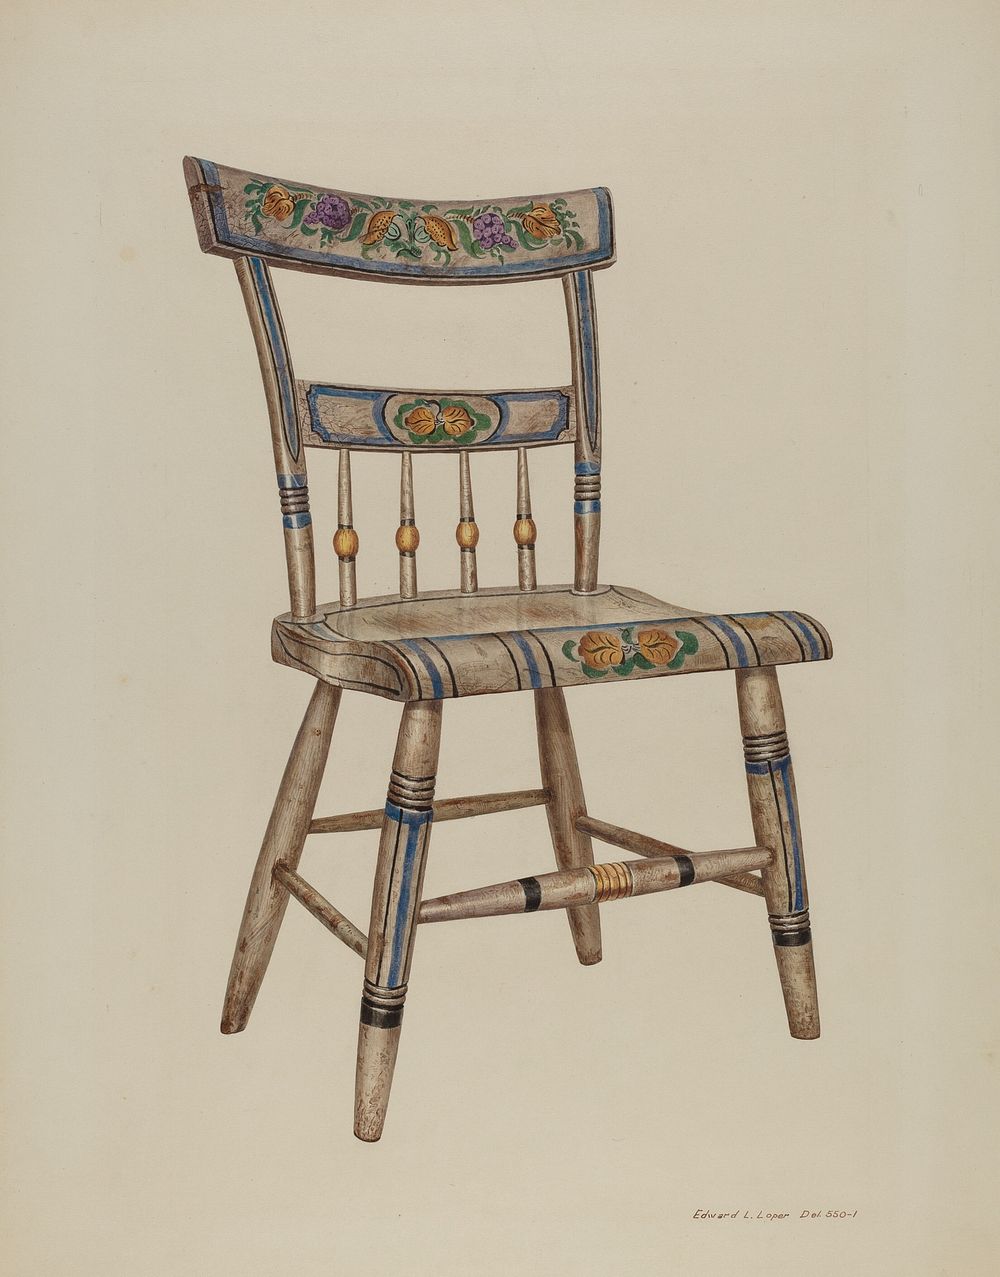 Pa. German Chair (1937) by Edward L. Loper.  